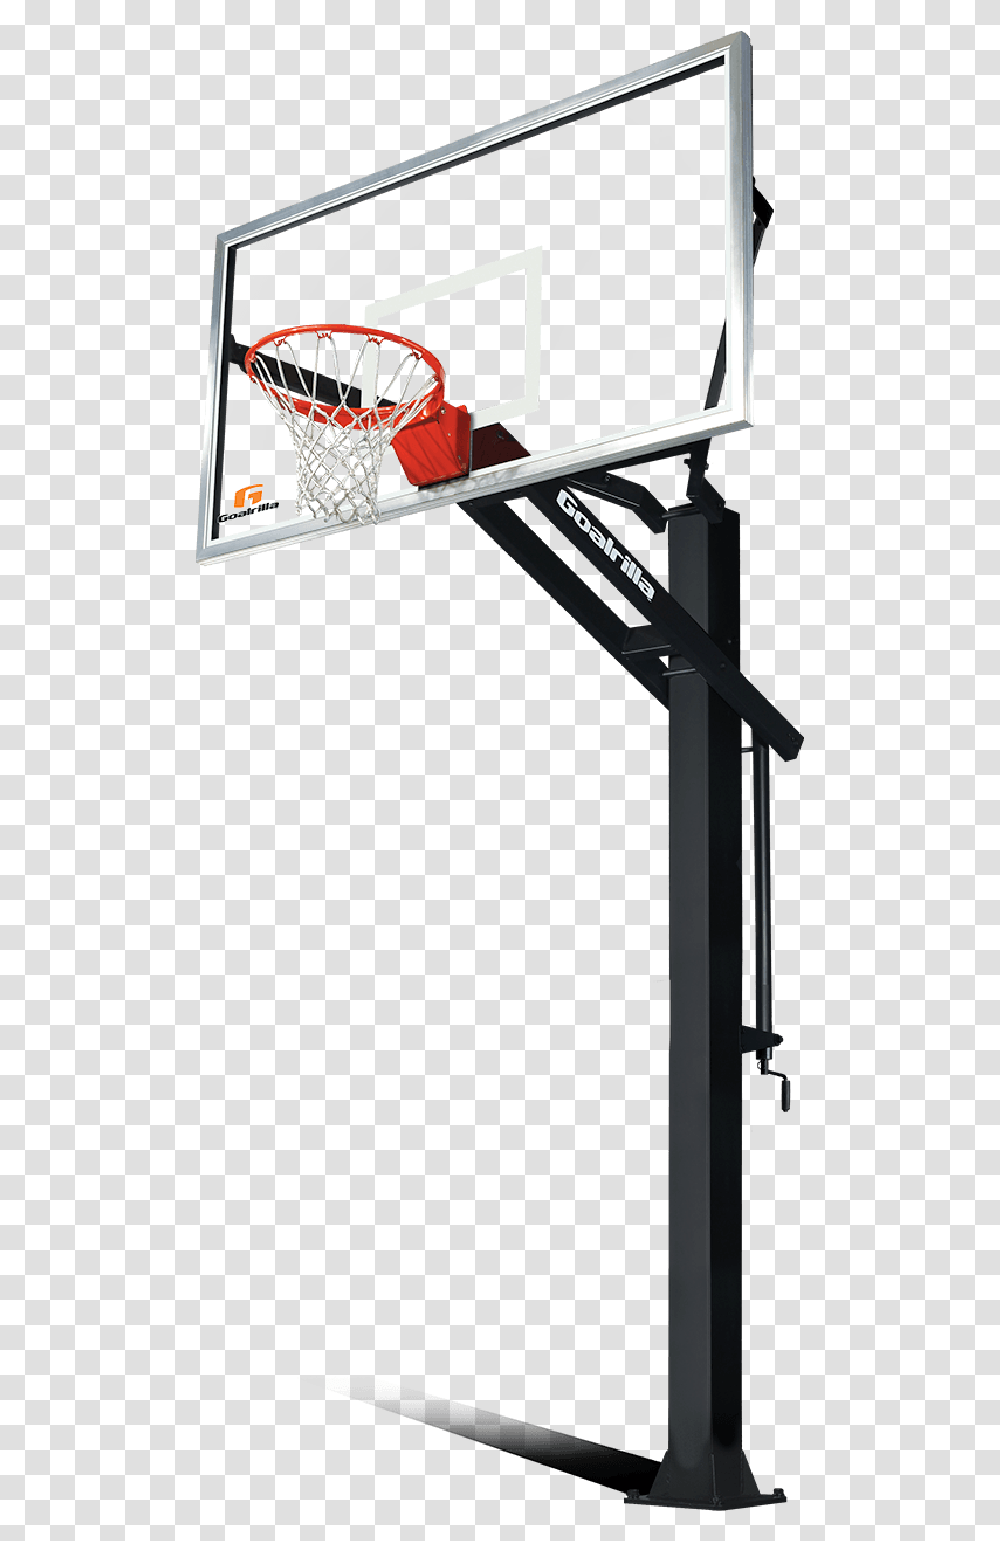 Backboard Canestro Basketball Court Rebound Basketball Hoop Background, Table, Furniture, Sport Transparent Png